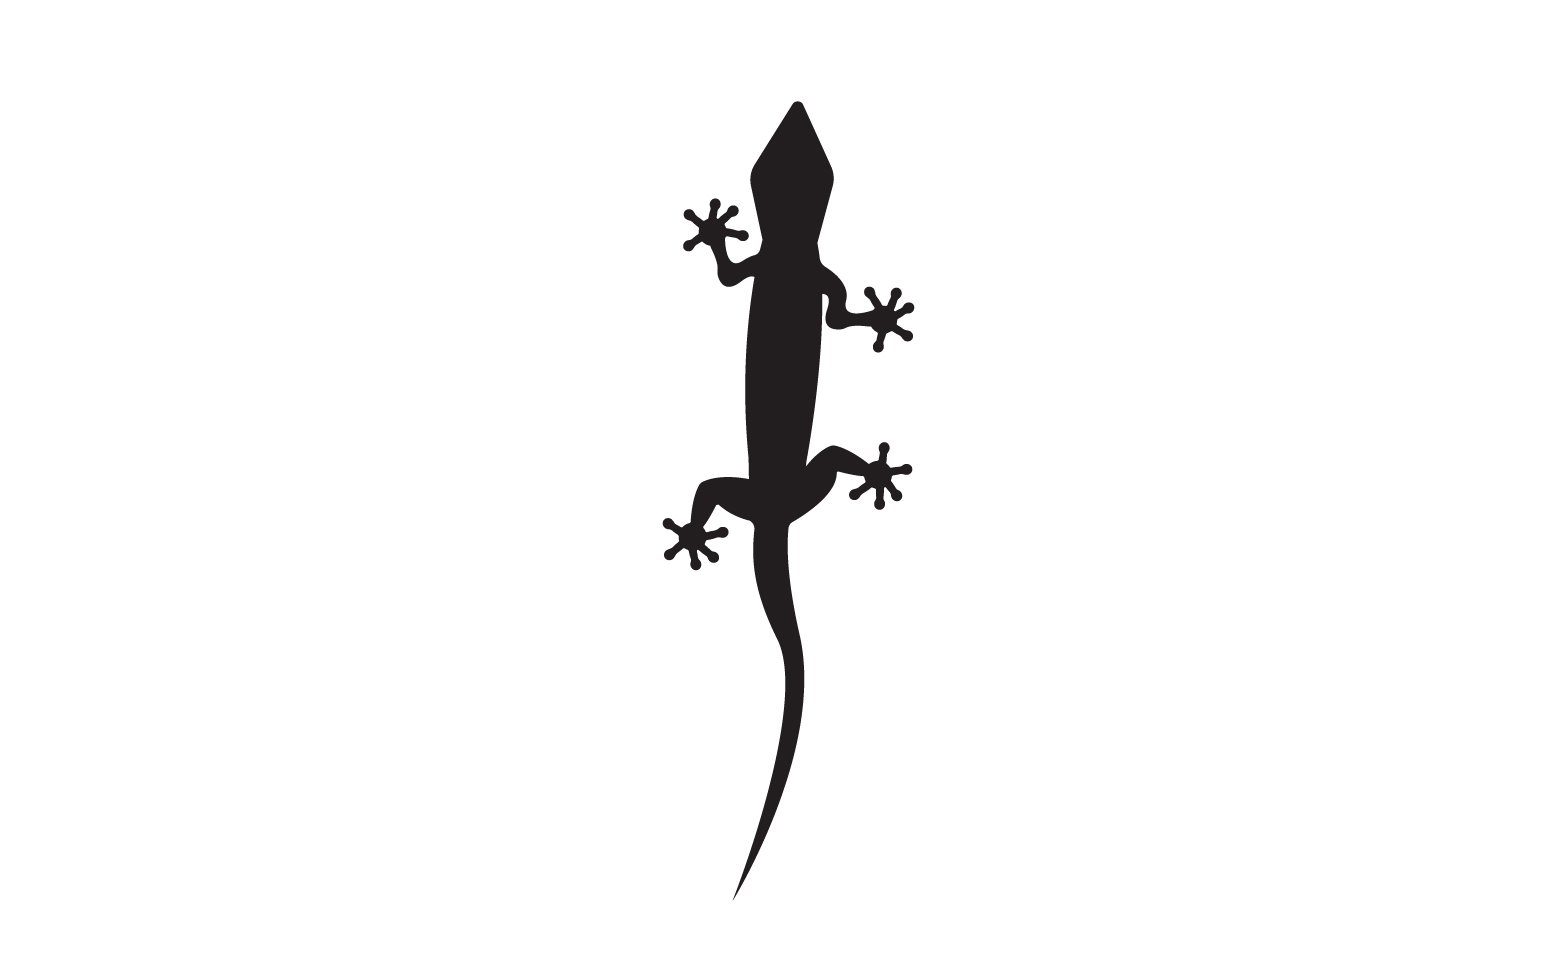 Lizard chameleon home lizard logo v13